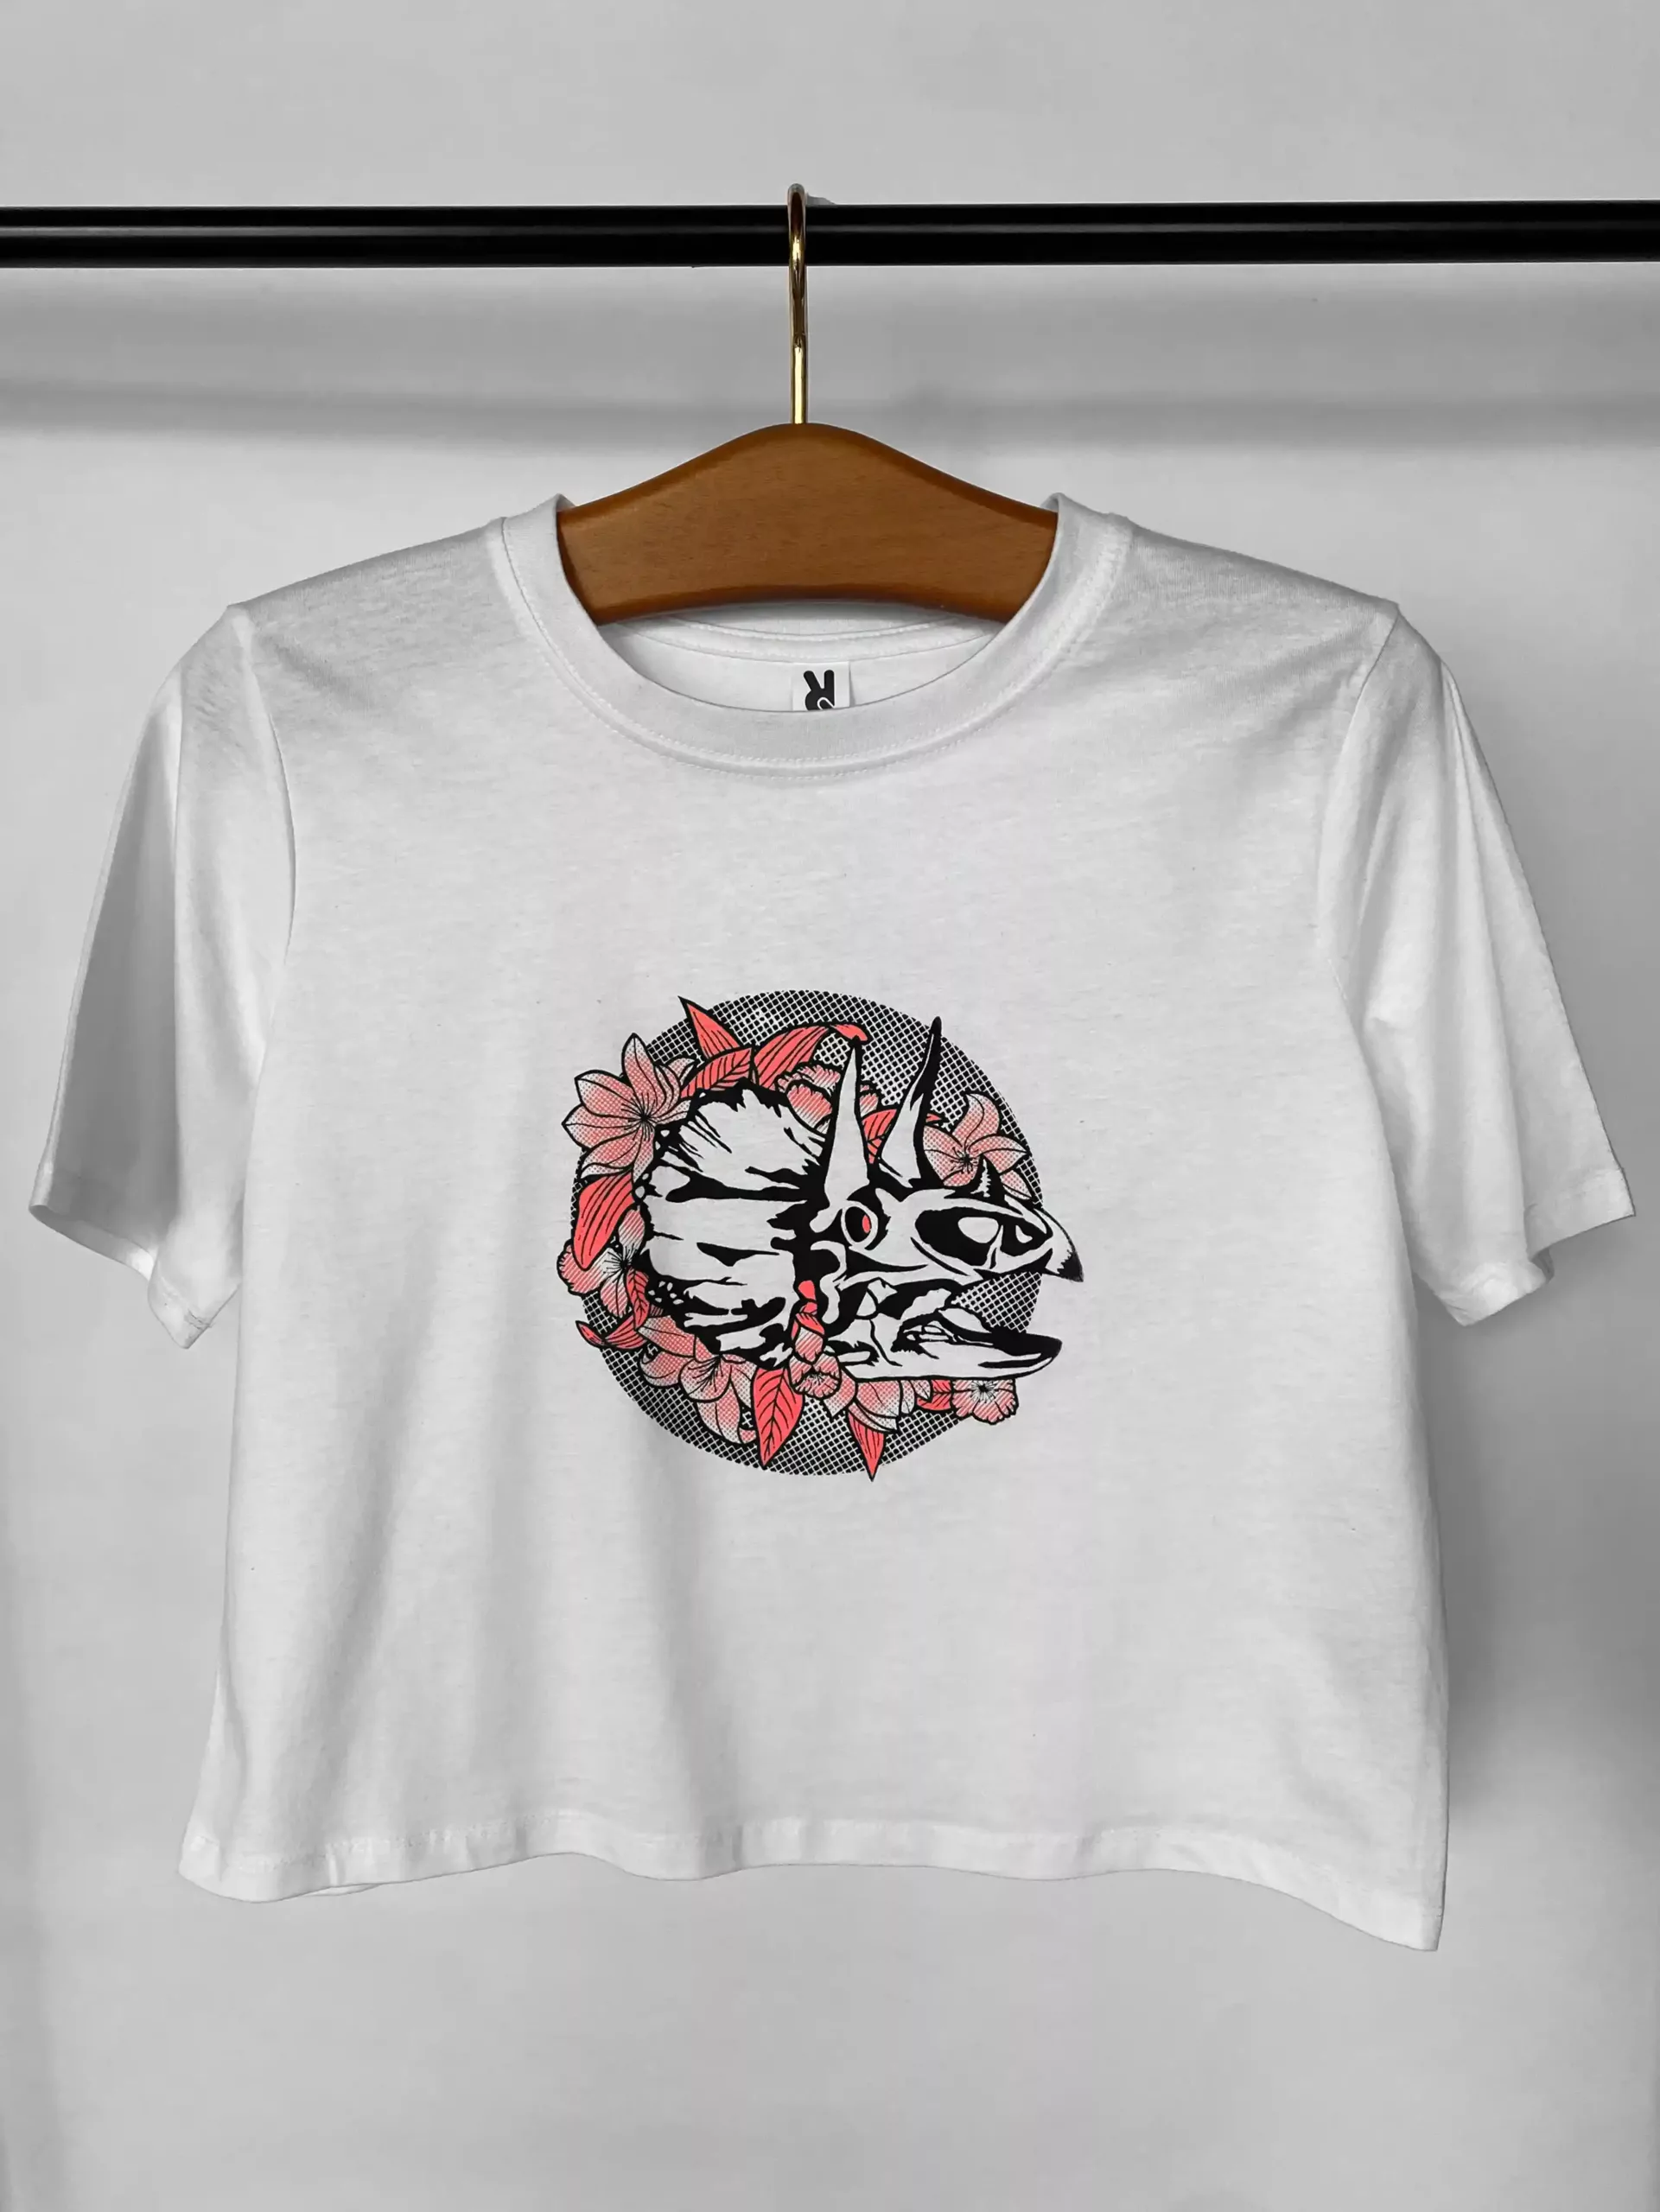 T-shirt femme motif "Dinoflore" rose fluo